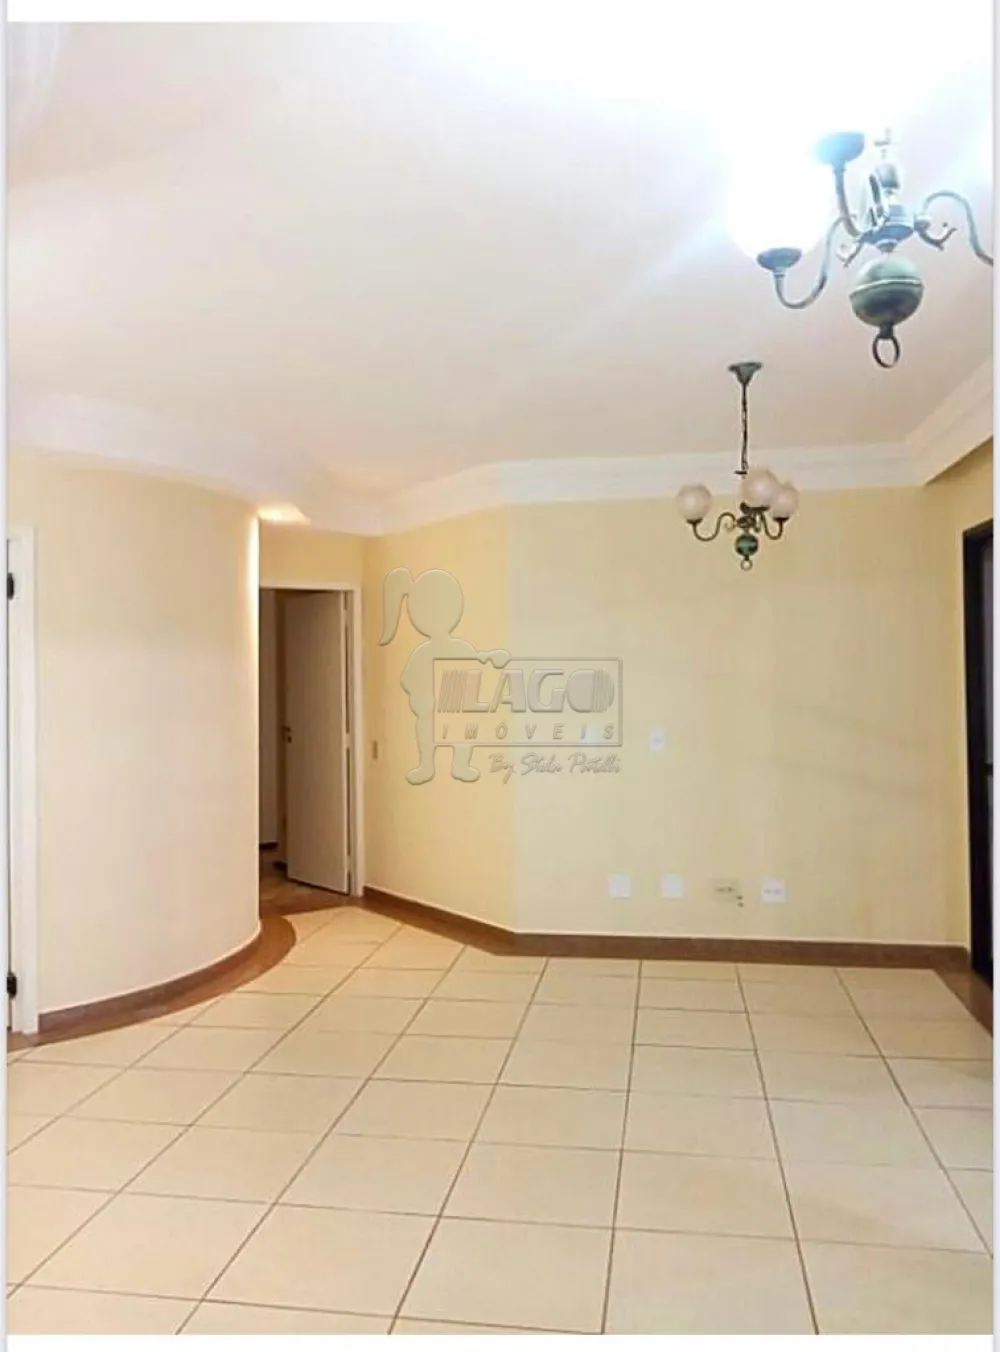 Alugar Apartamentos / Padrão em Ribeirão Preto R$ 1.700,00 - Foto 5